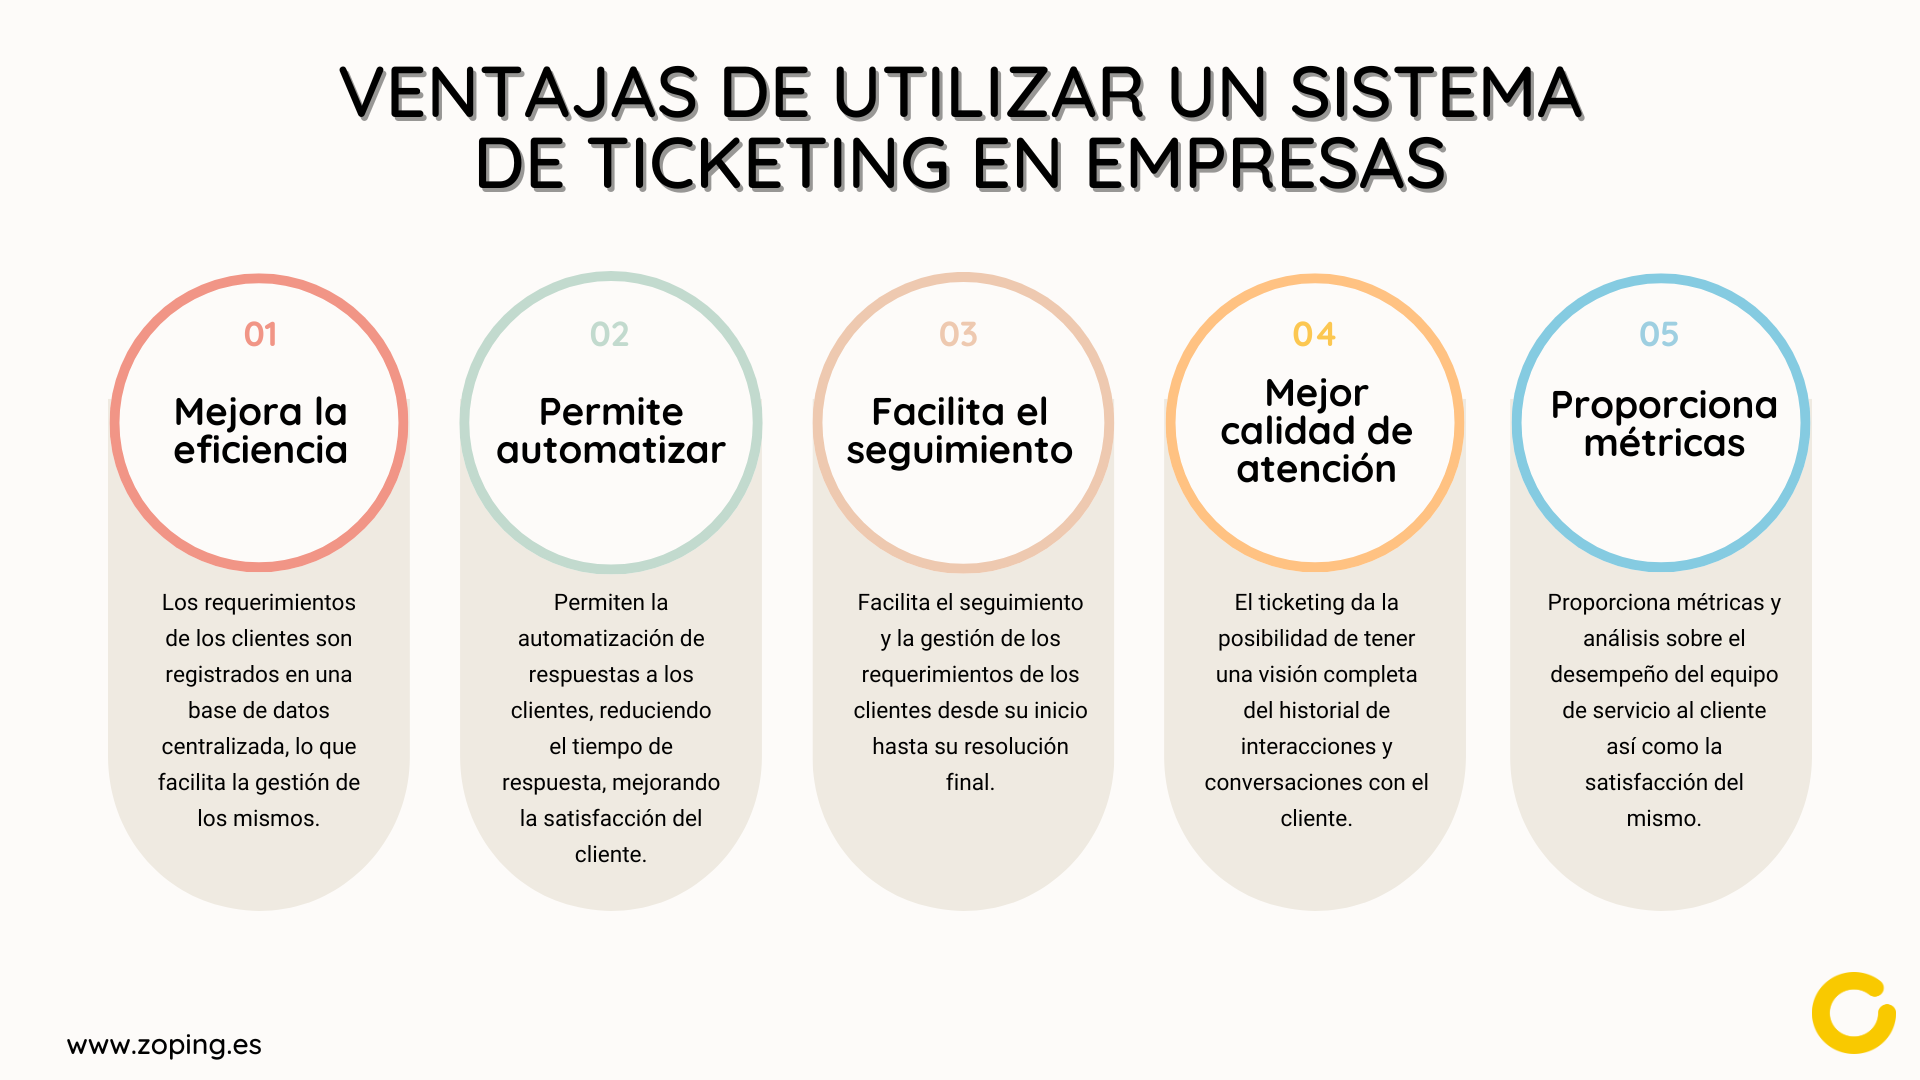 Ventajas de utilizar un sistema de ticketing en empresas